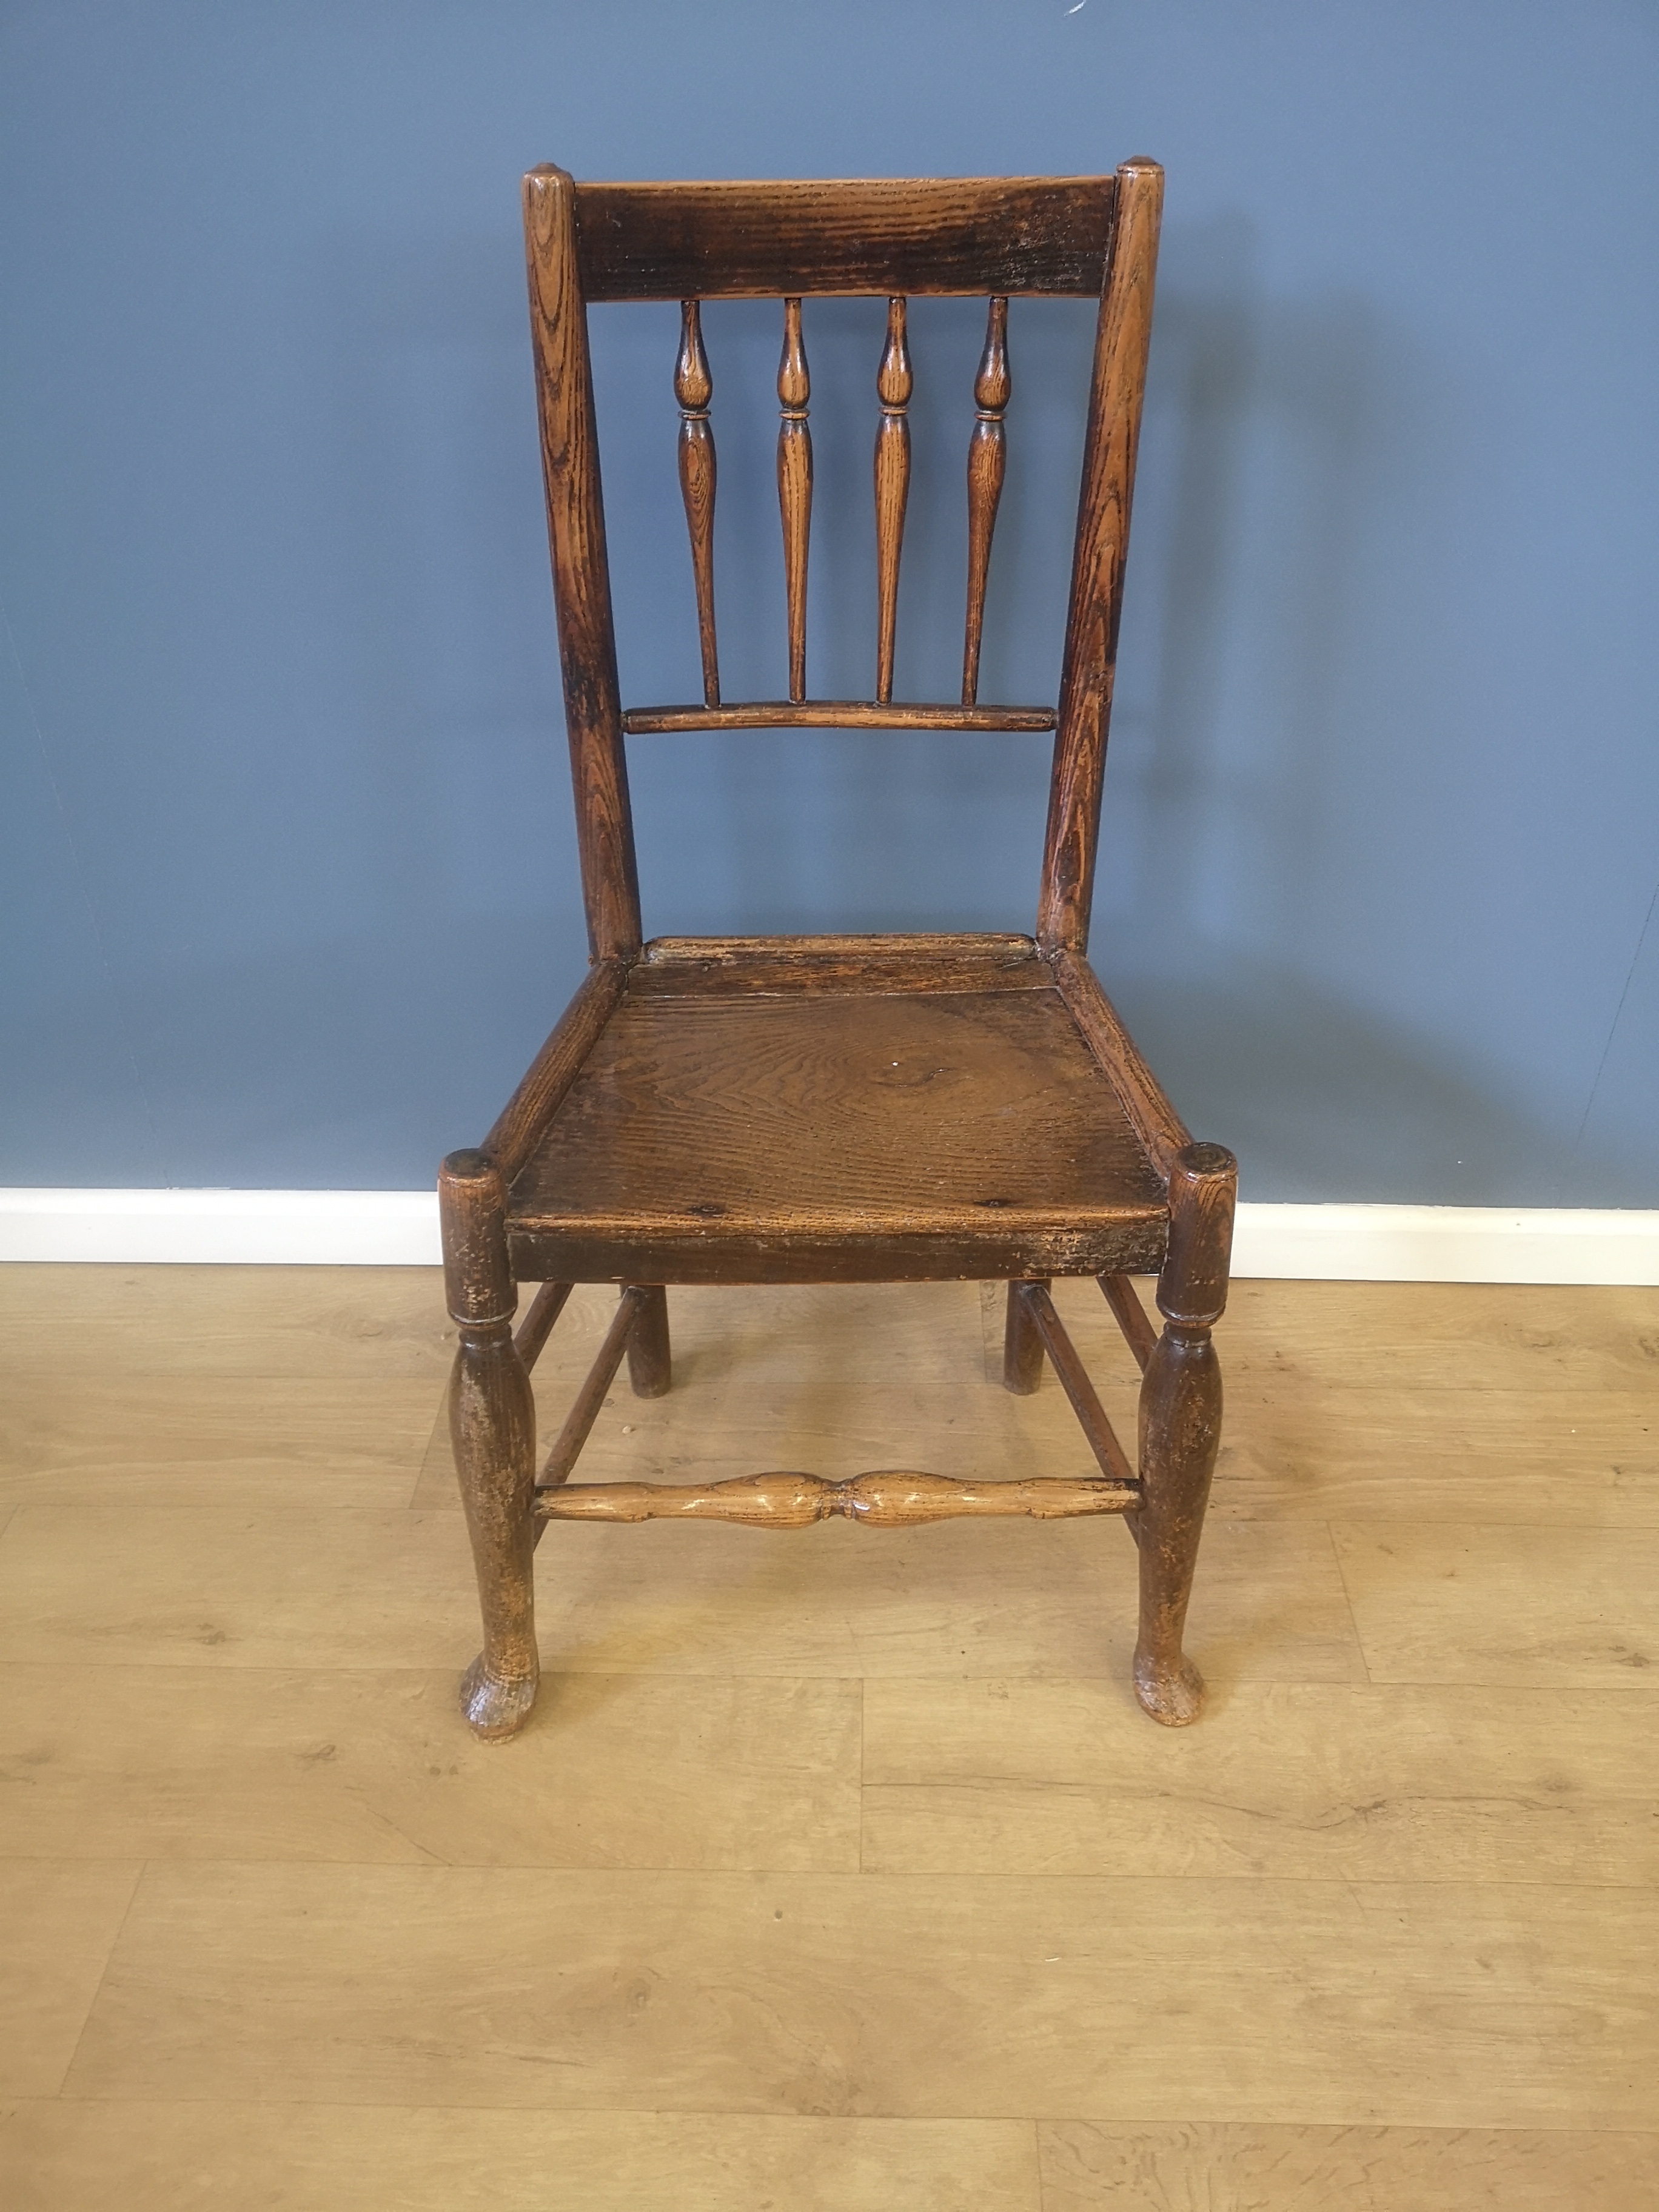 19th century ash railback chair